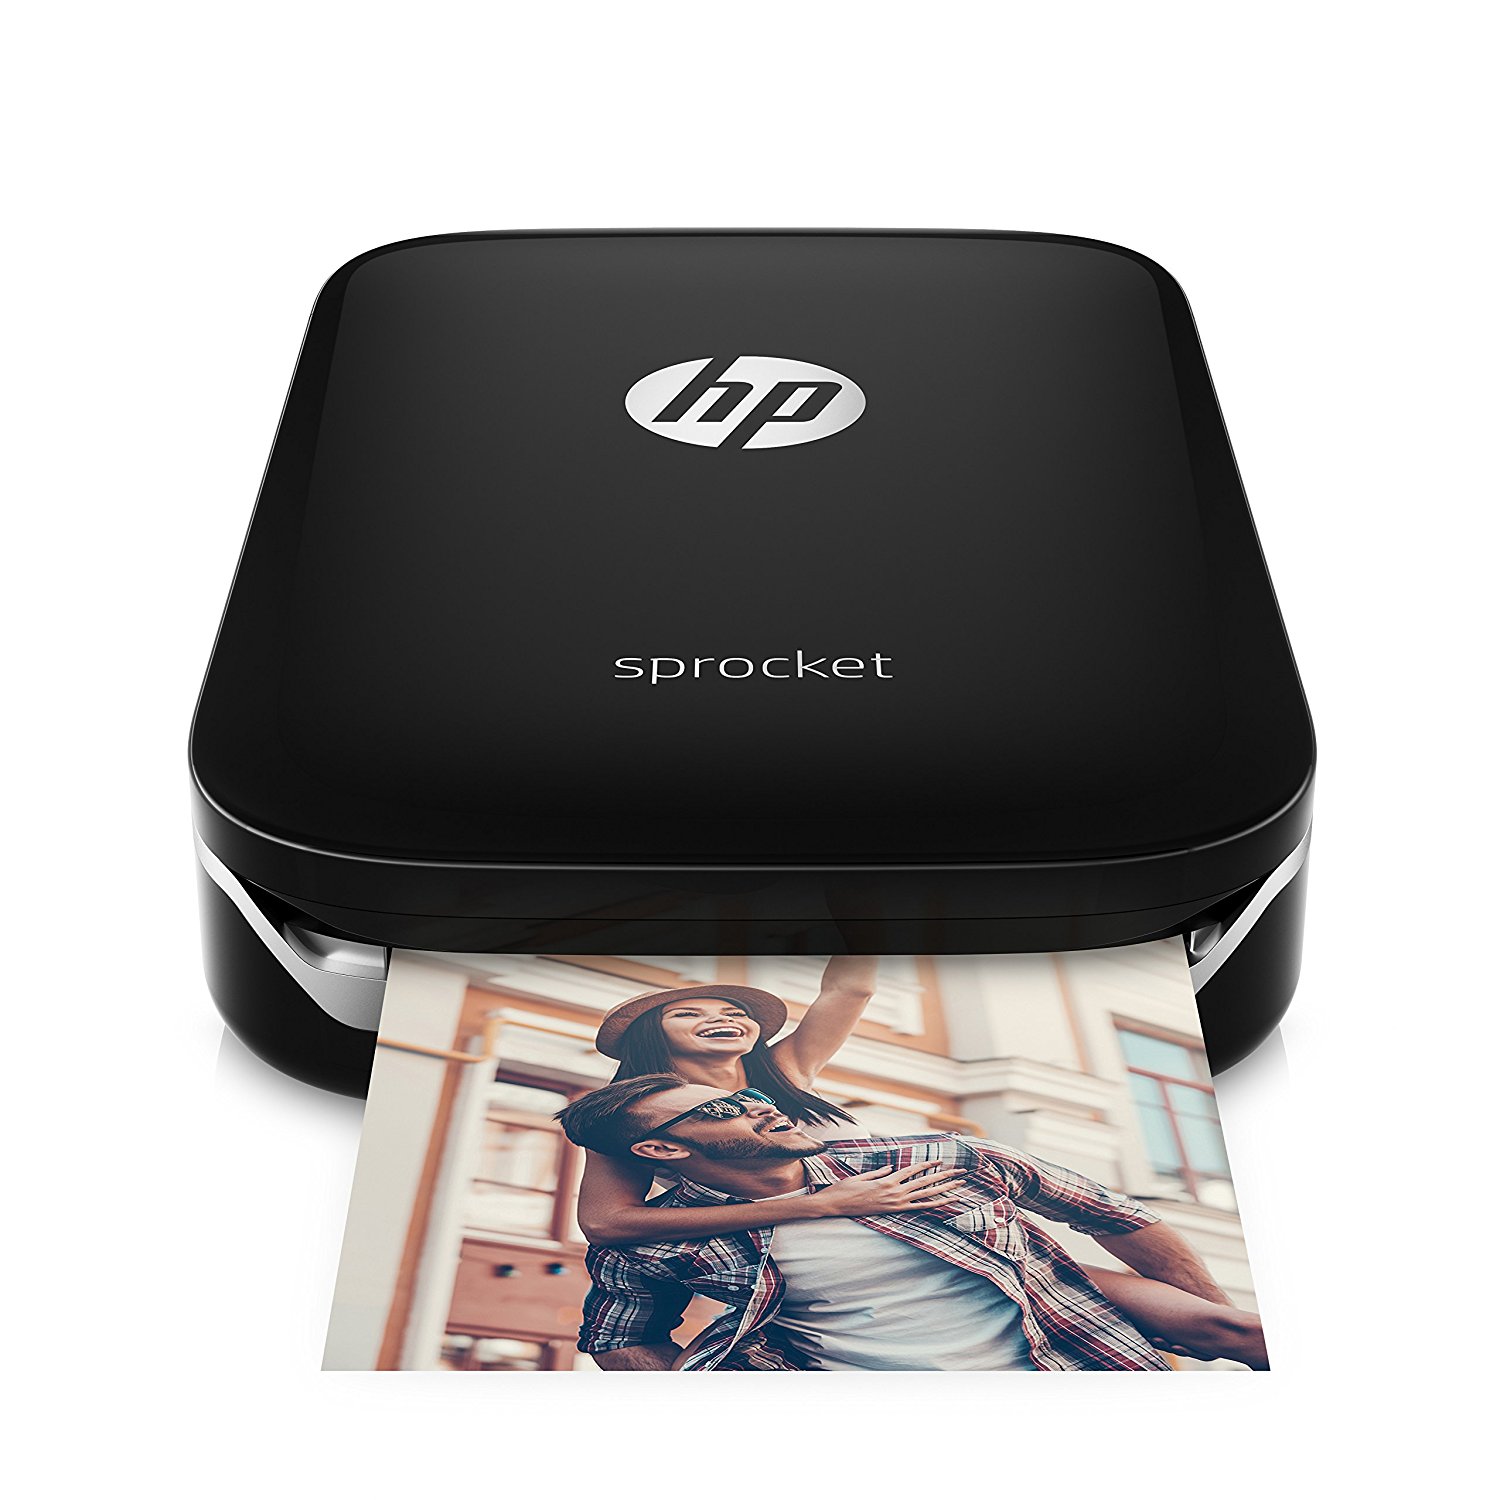 Polaroid ZIP, análisis: la impresora portátil que te puedes llevar